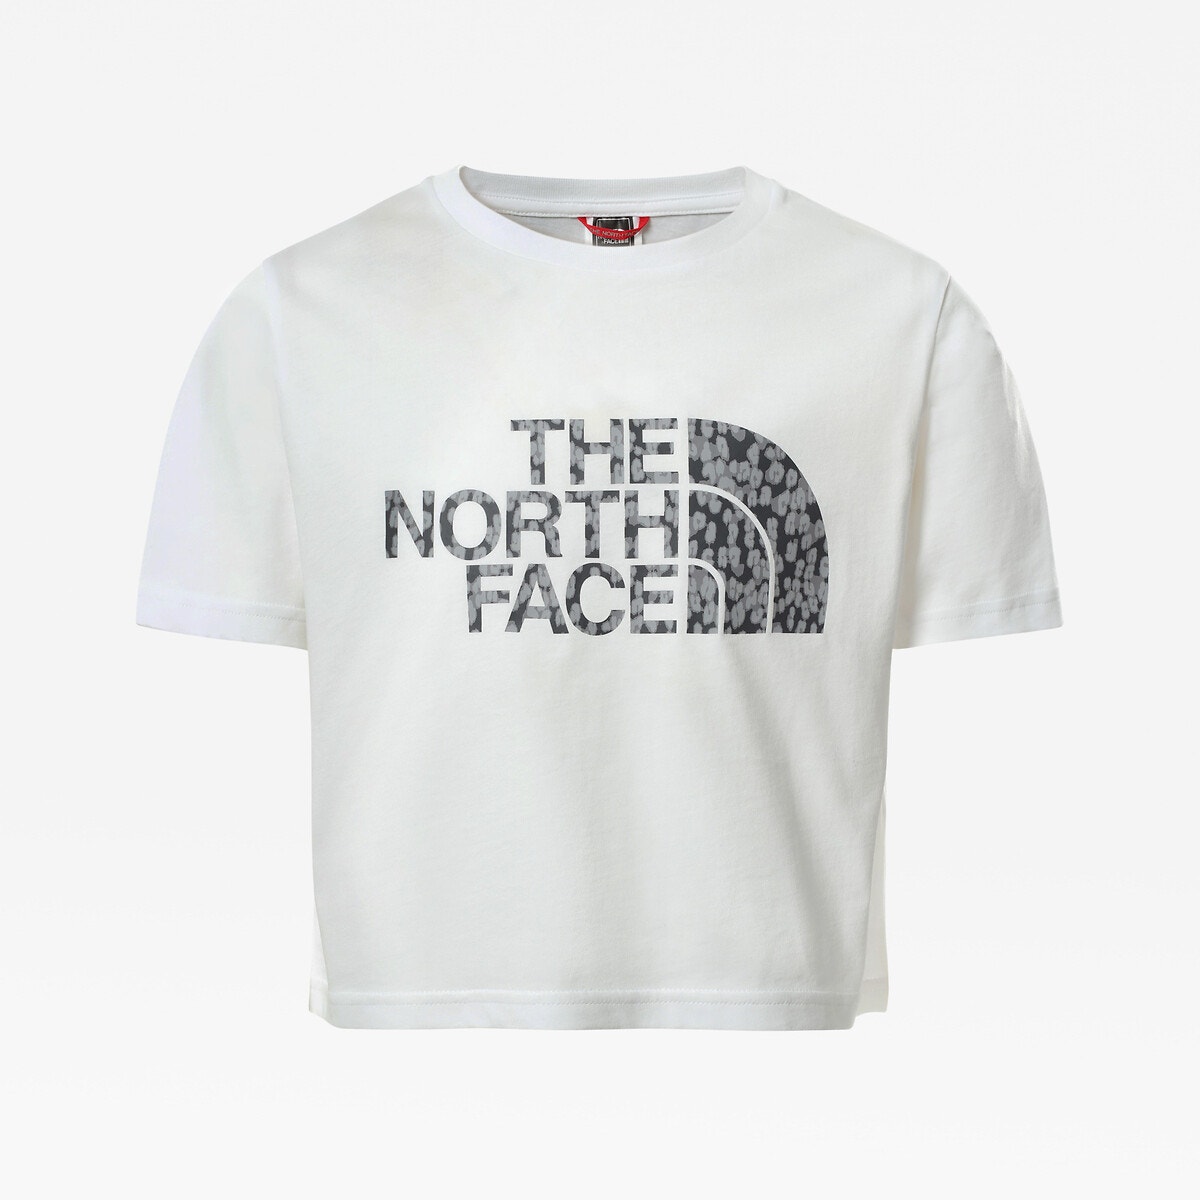 ΠΑΙΔΙ | Μπλούζες & Πουκάμισα | T-shirts Κοντό T-shirt με στρογγυλή λαιμόκοψη, 6-18 ετών